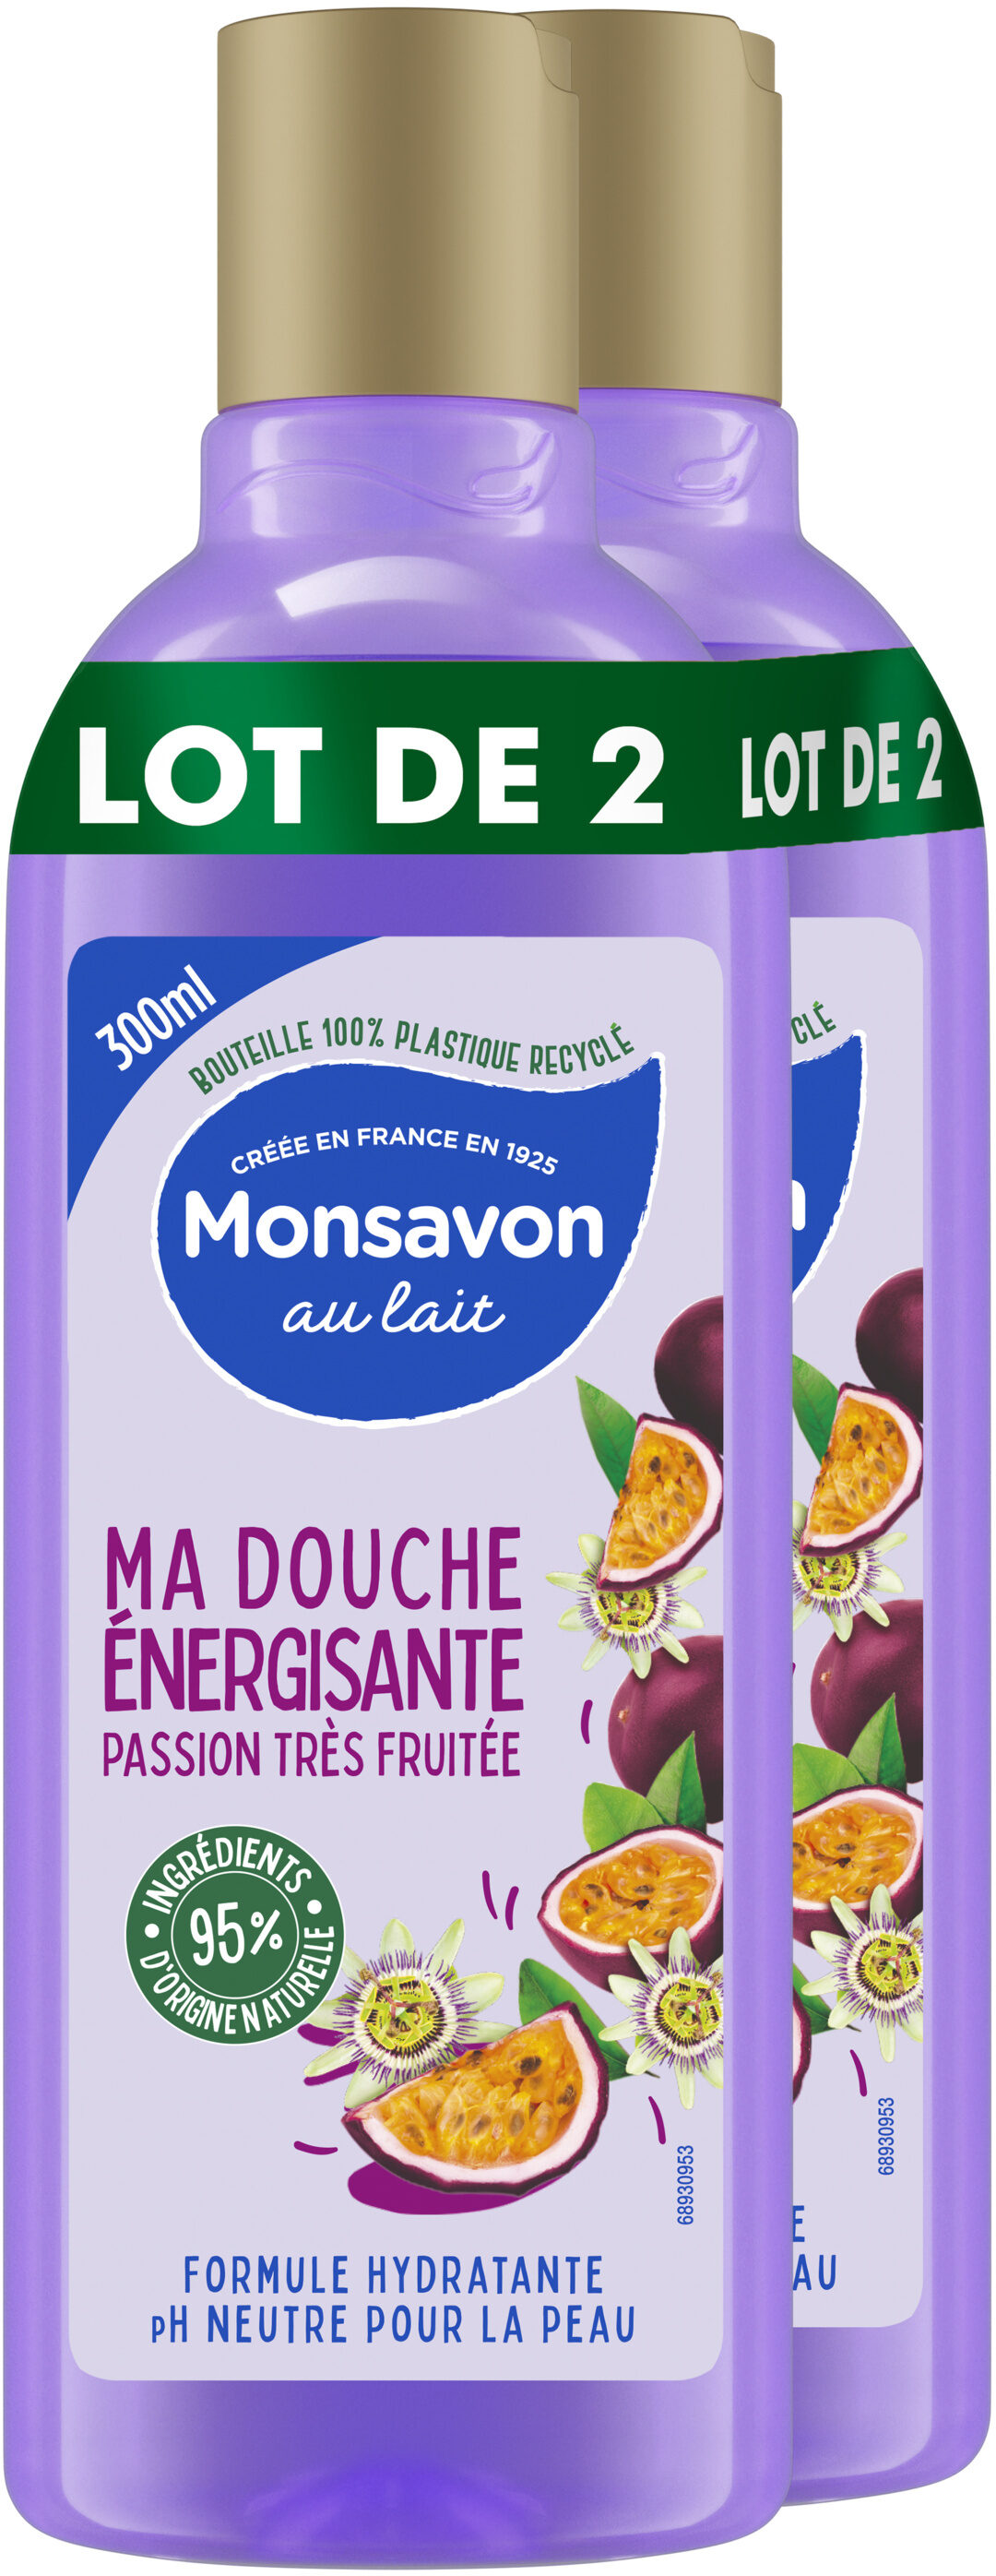 Monsavon Gel Douche Passion Bien Fruitée 300ml Lot de 2 - Product - fr